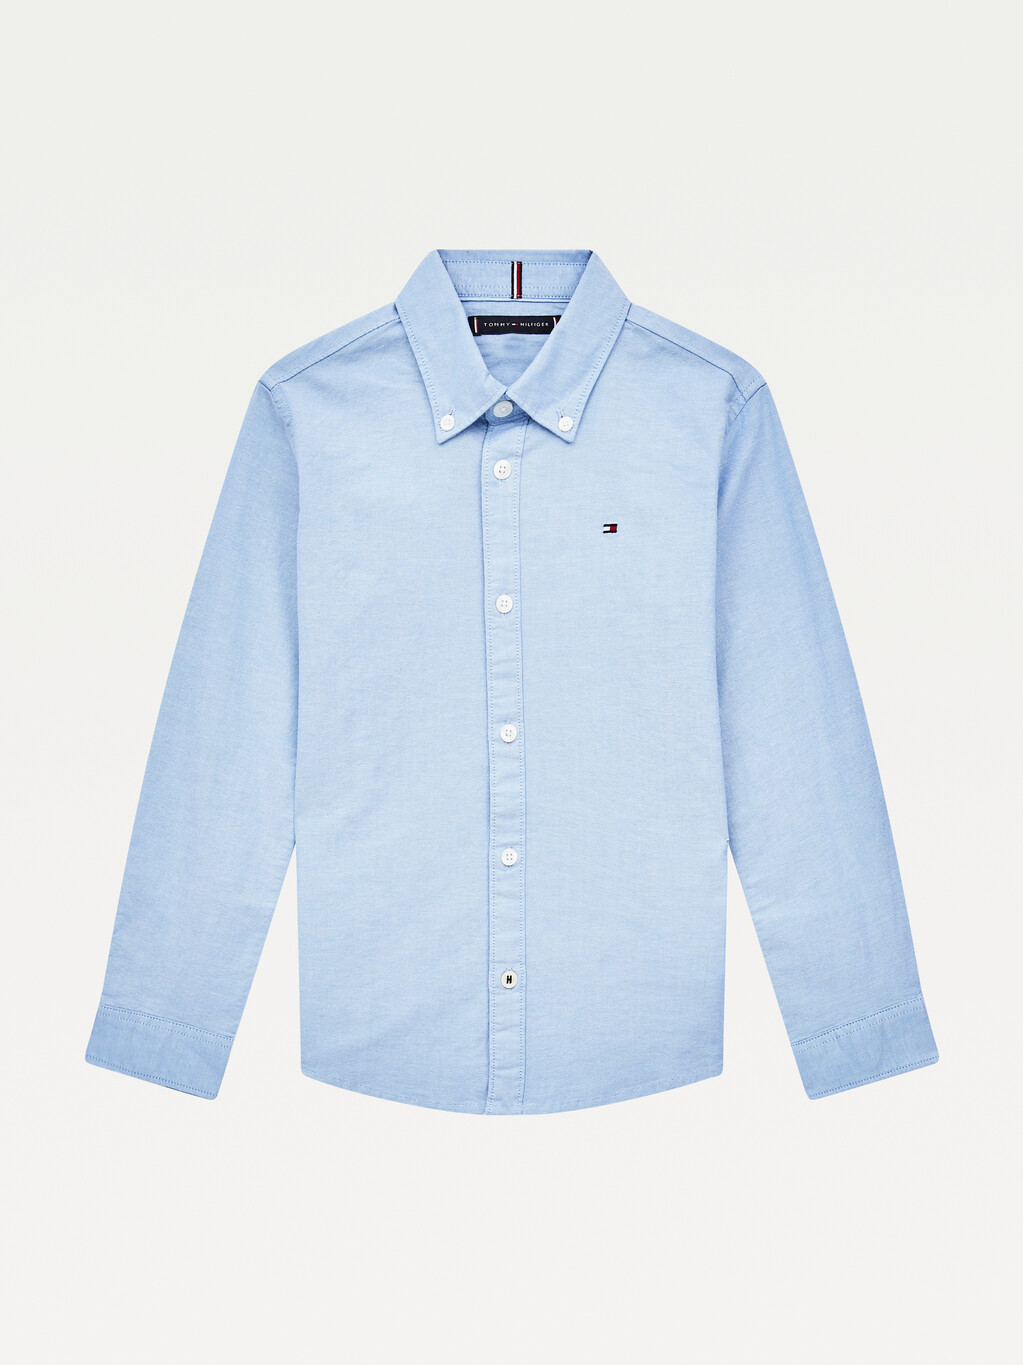 Stretch Oxford Cotton Shirt, Calm Blue, hi-res